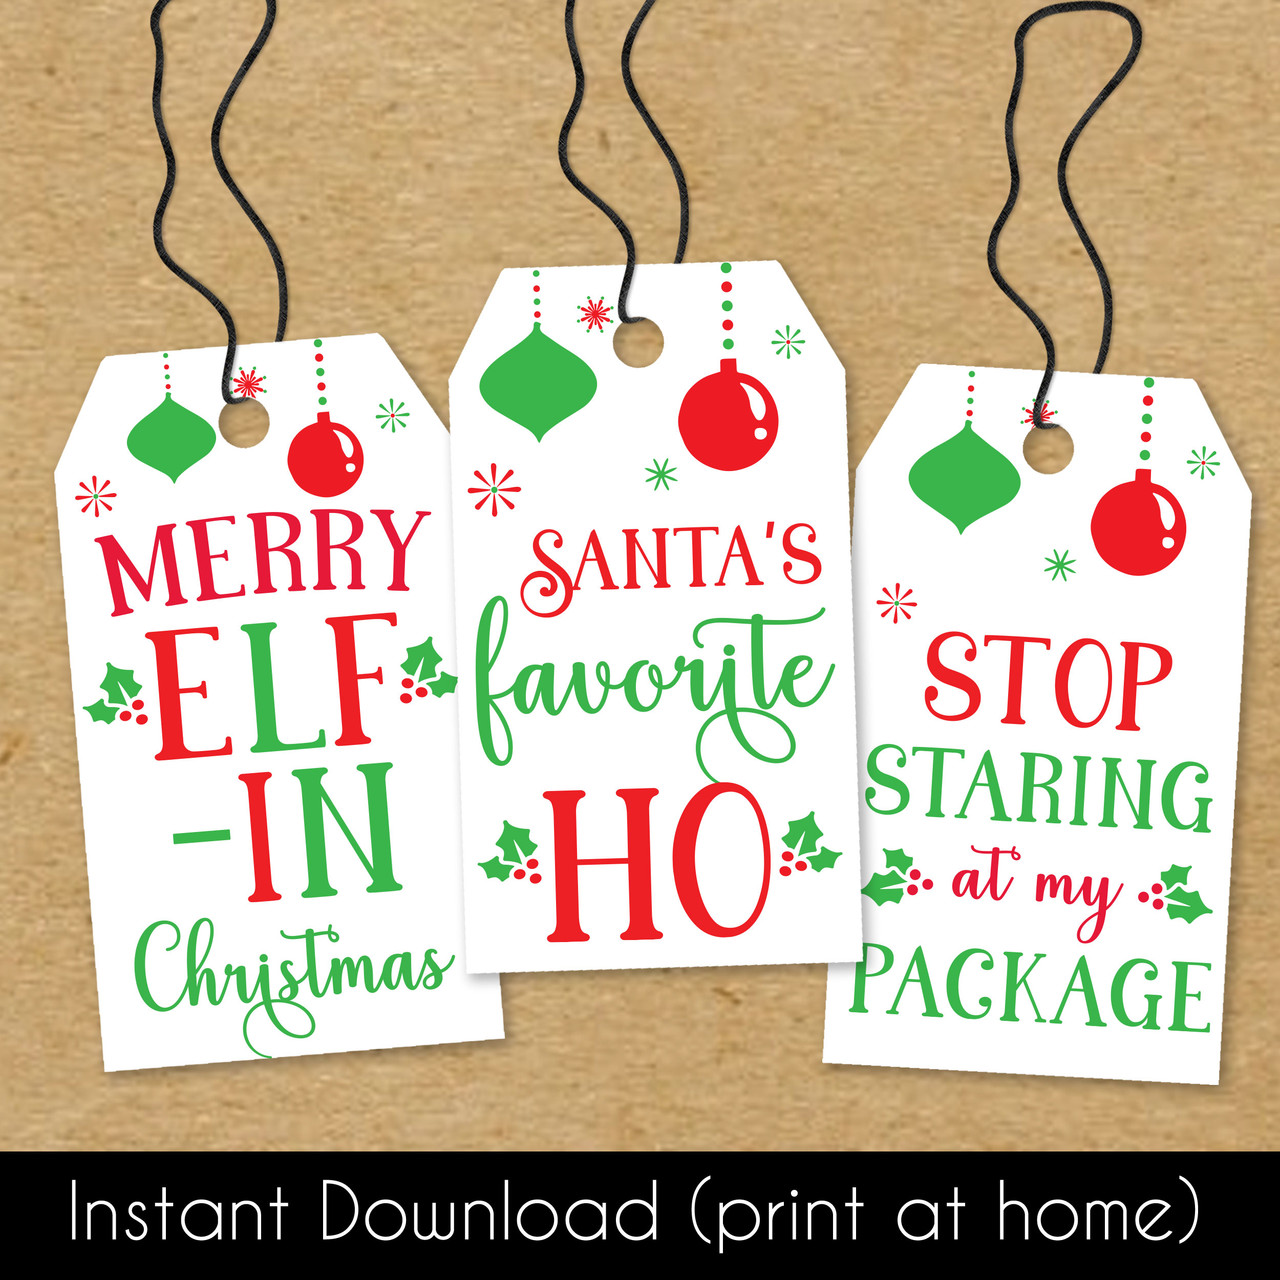 Printable Christmas gift tags for Christmas present gifts and